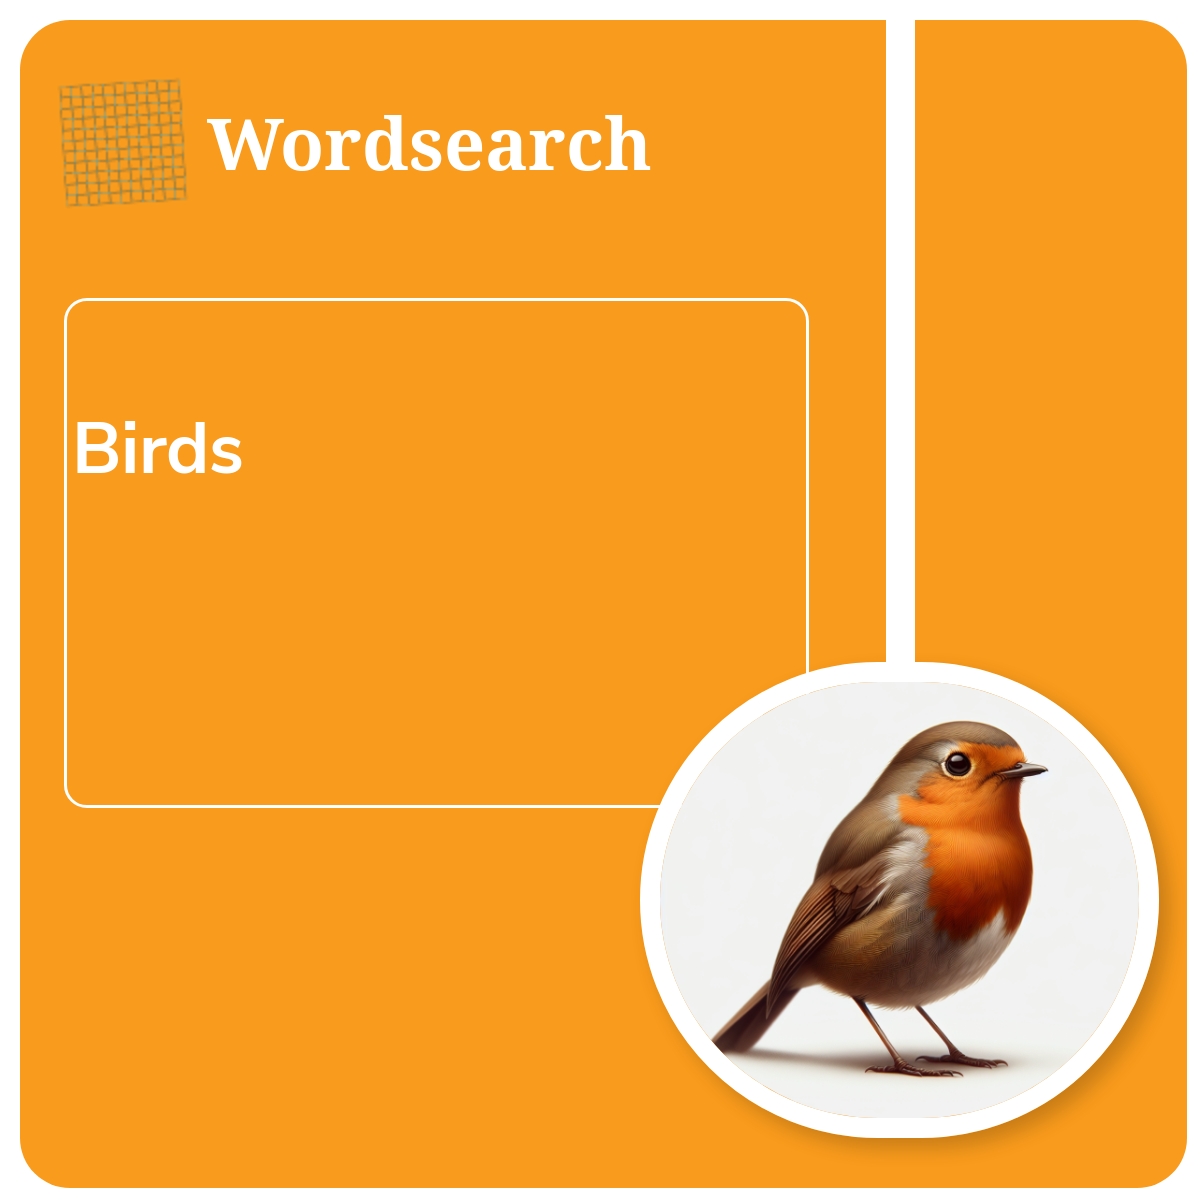 Wordsearch: Birds